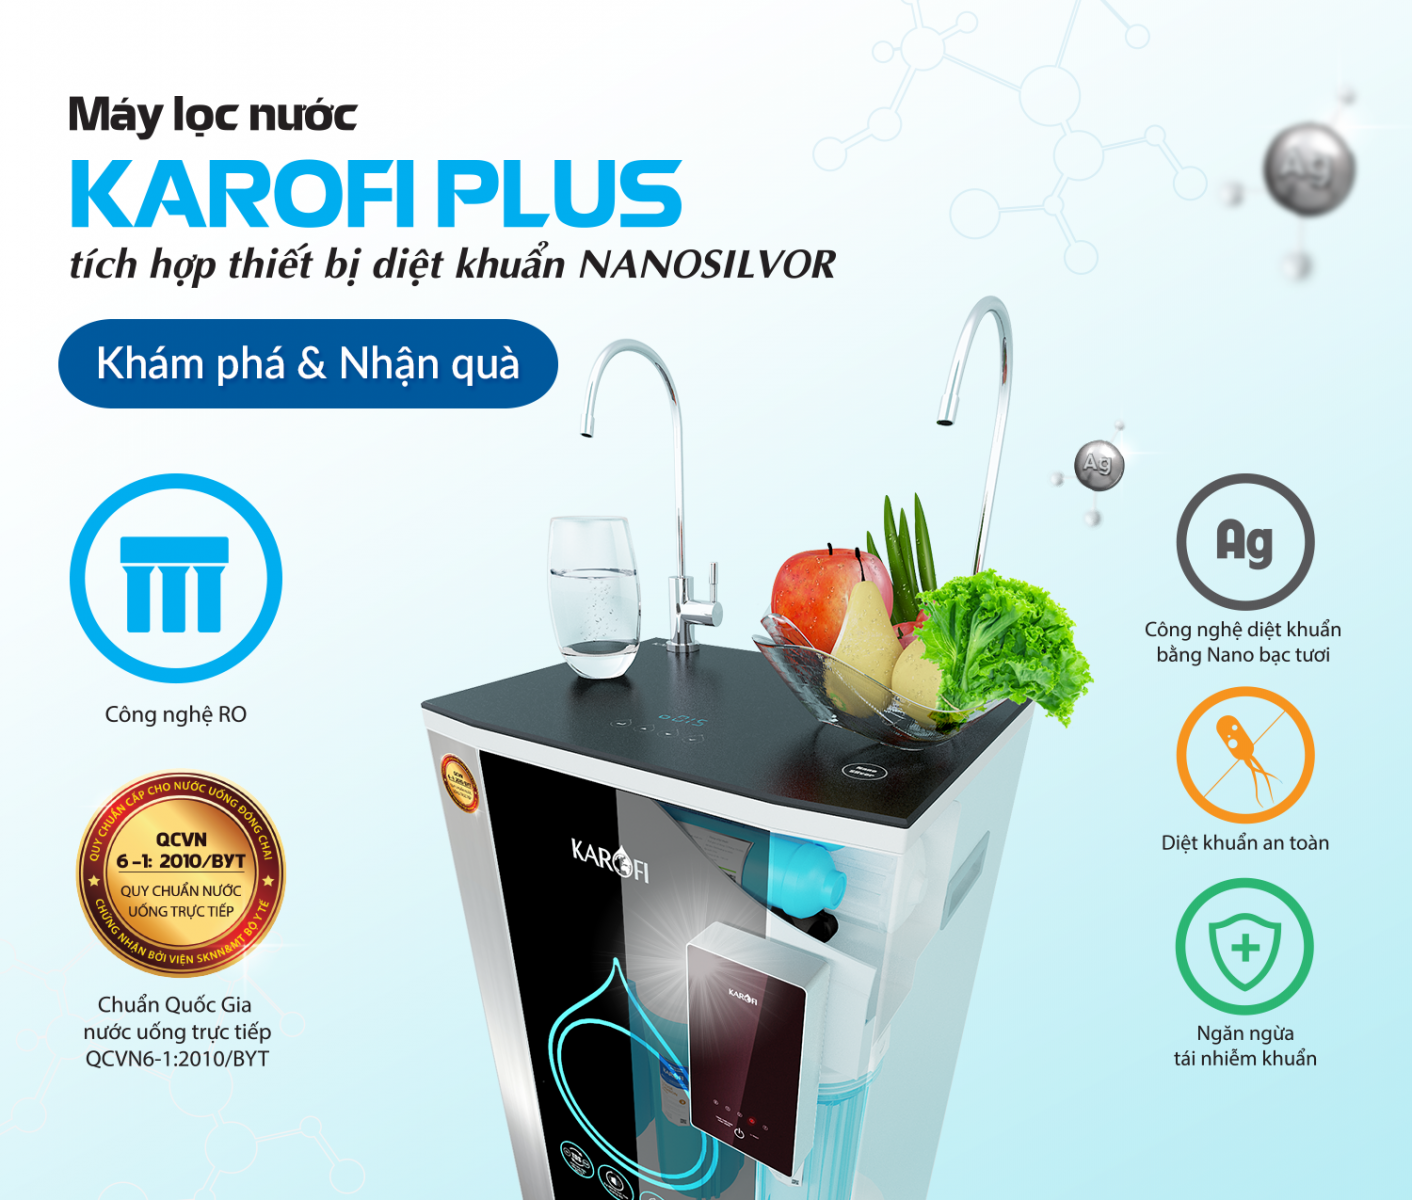 Máy lọc nước Karofi Plus tích hợp thiết bị diệt khuẩn NanoSilvor